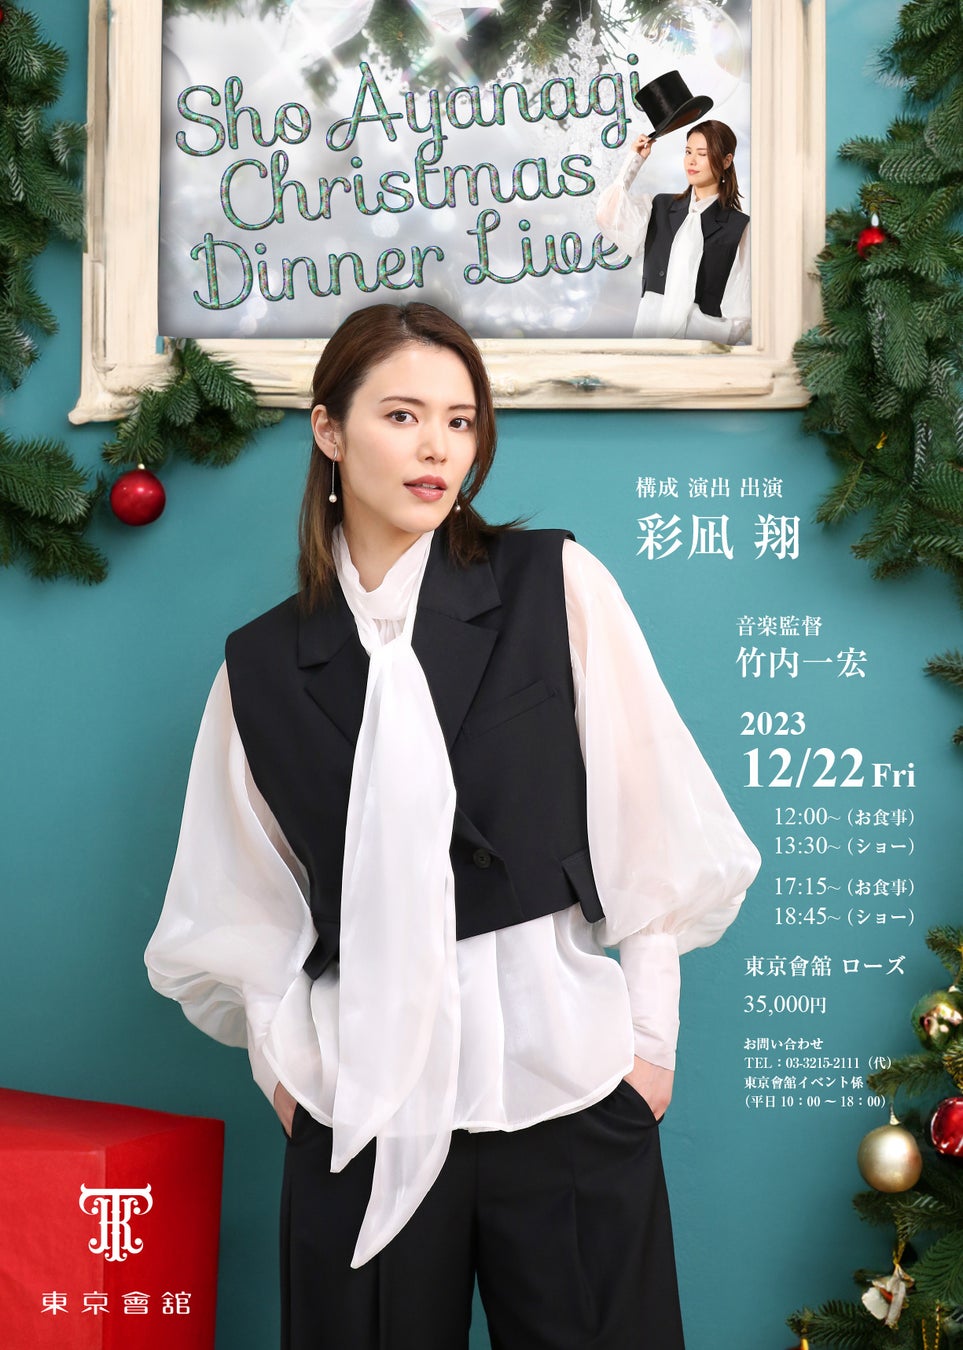 彩凪翔Christmas Dinner Live　出演者情報解禁、チケット発売スタート！